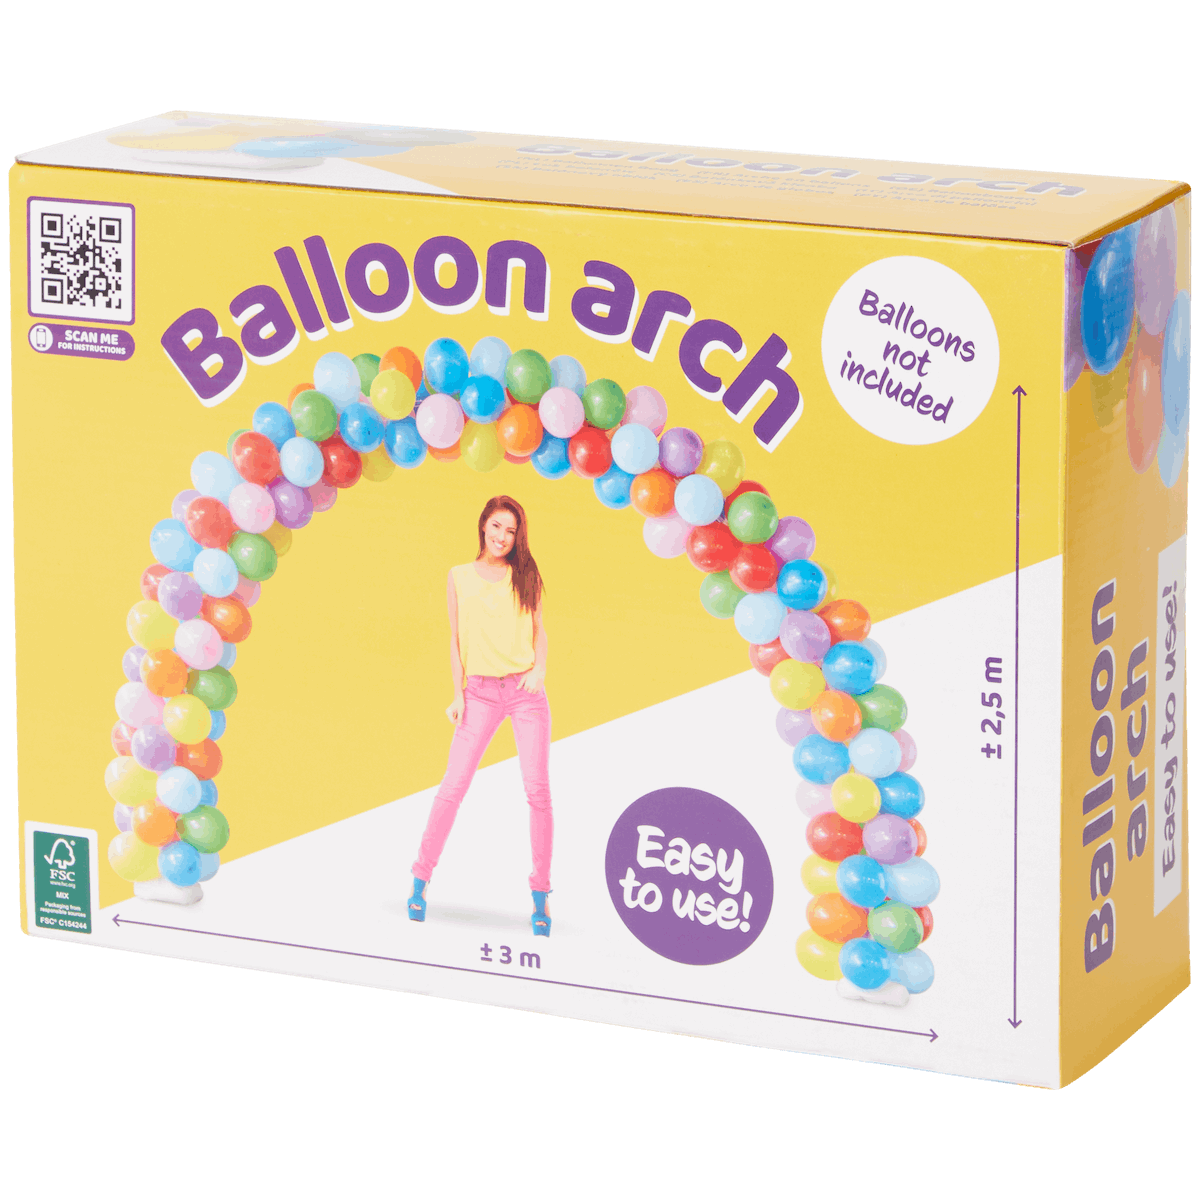 Ballonbogen ohne Ballons 3 * 2.5 m - DeinMarkt.at 